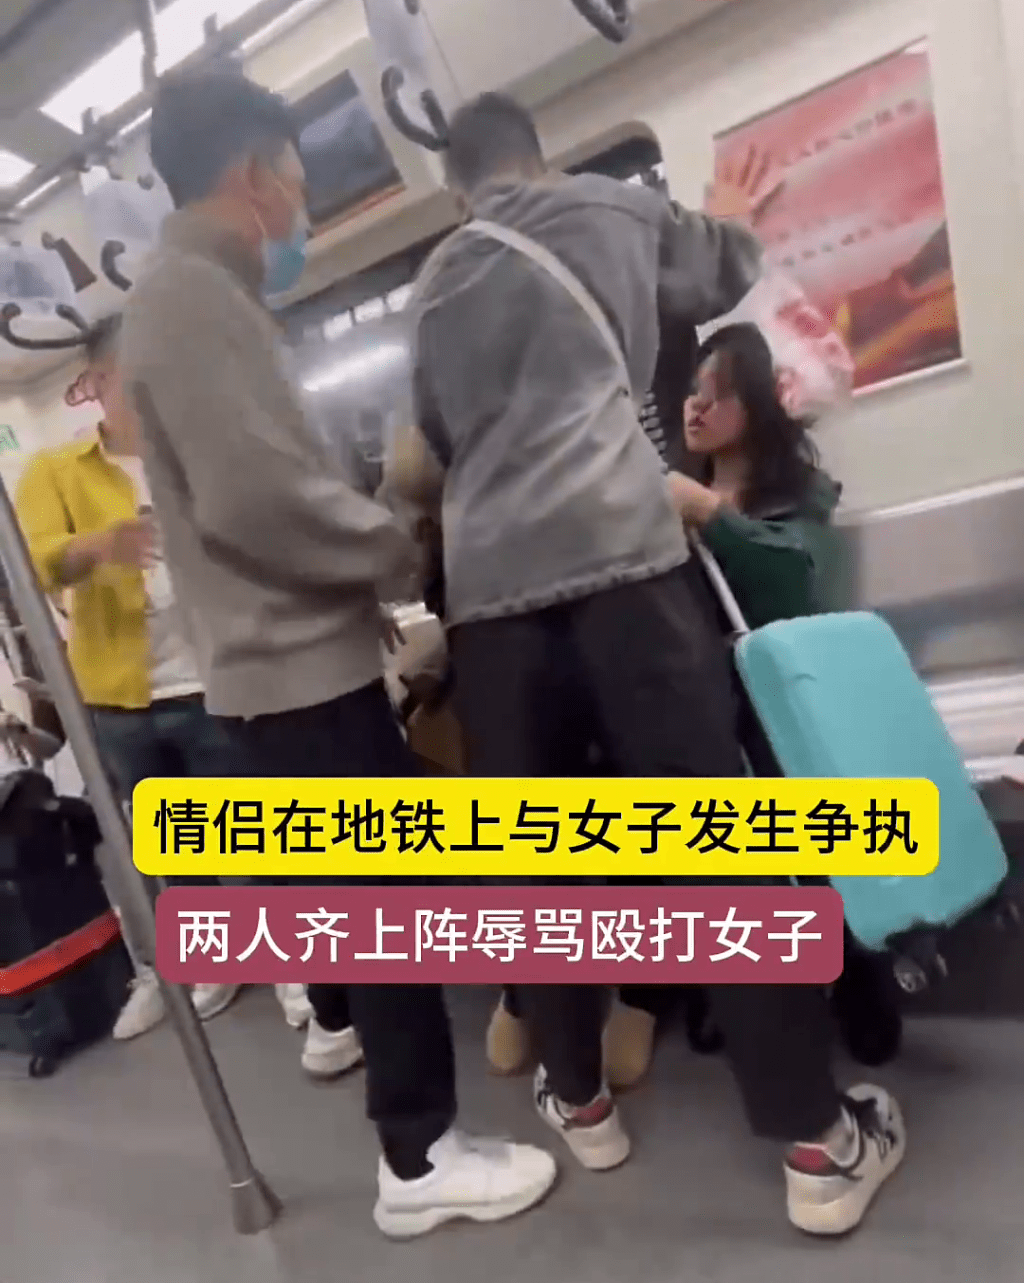 有男乘客用身體企圖擋在雙方的中間。